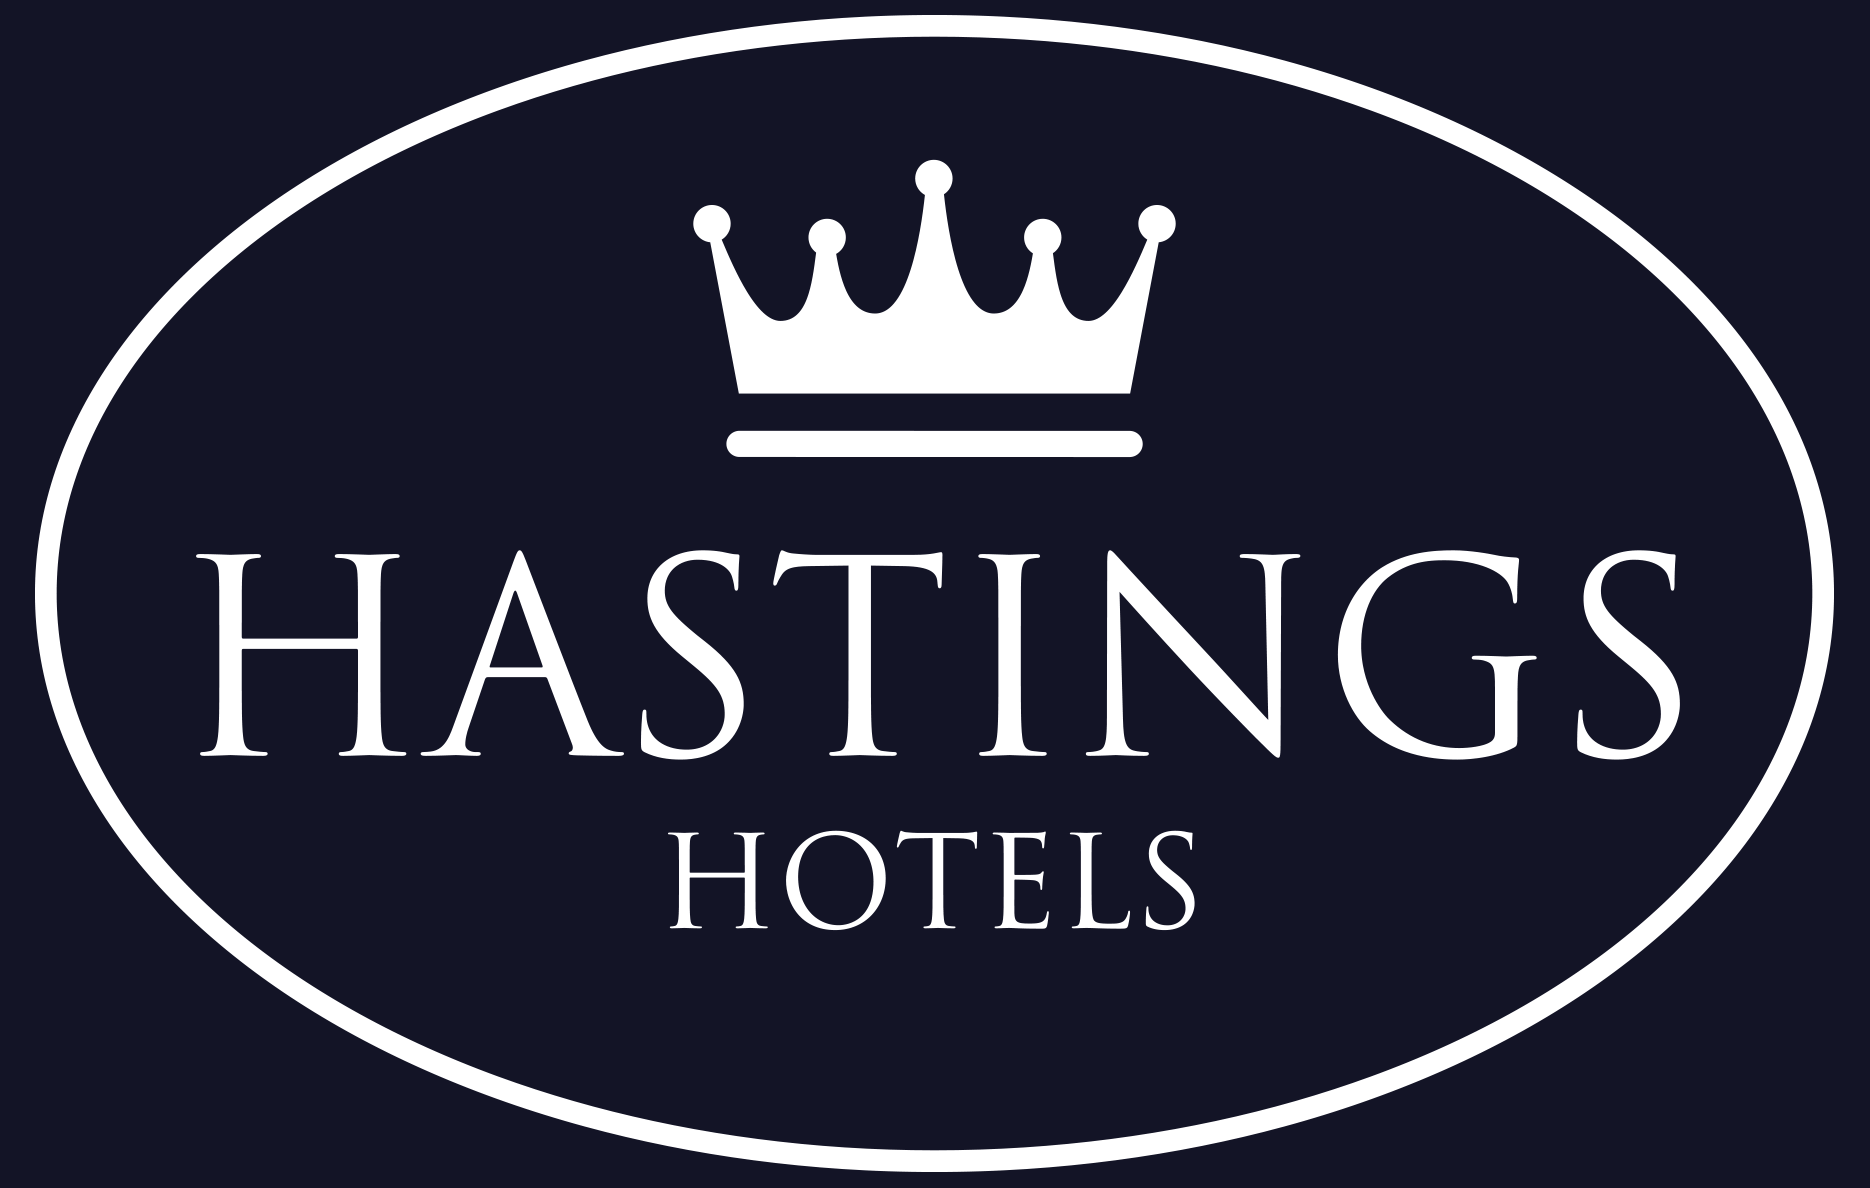 Hastings Hotels logo